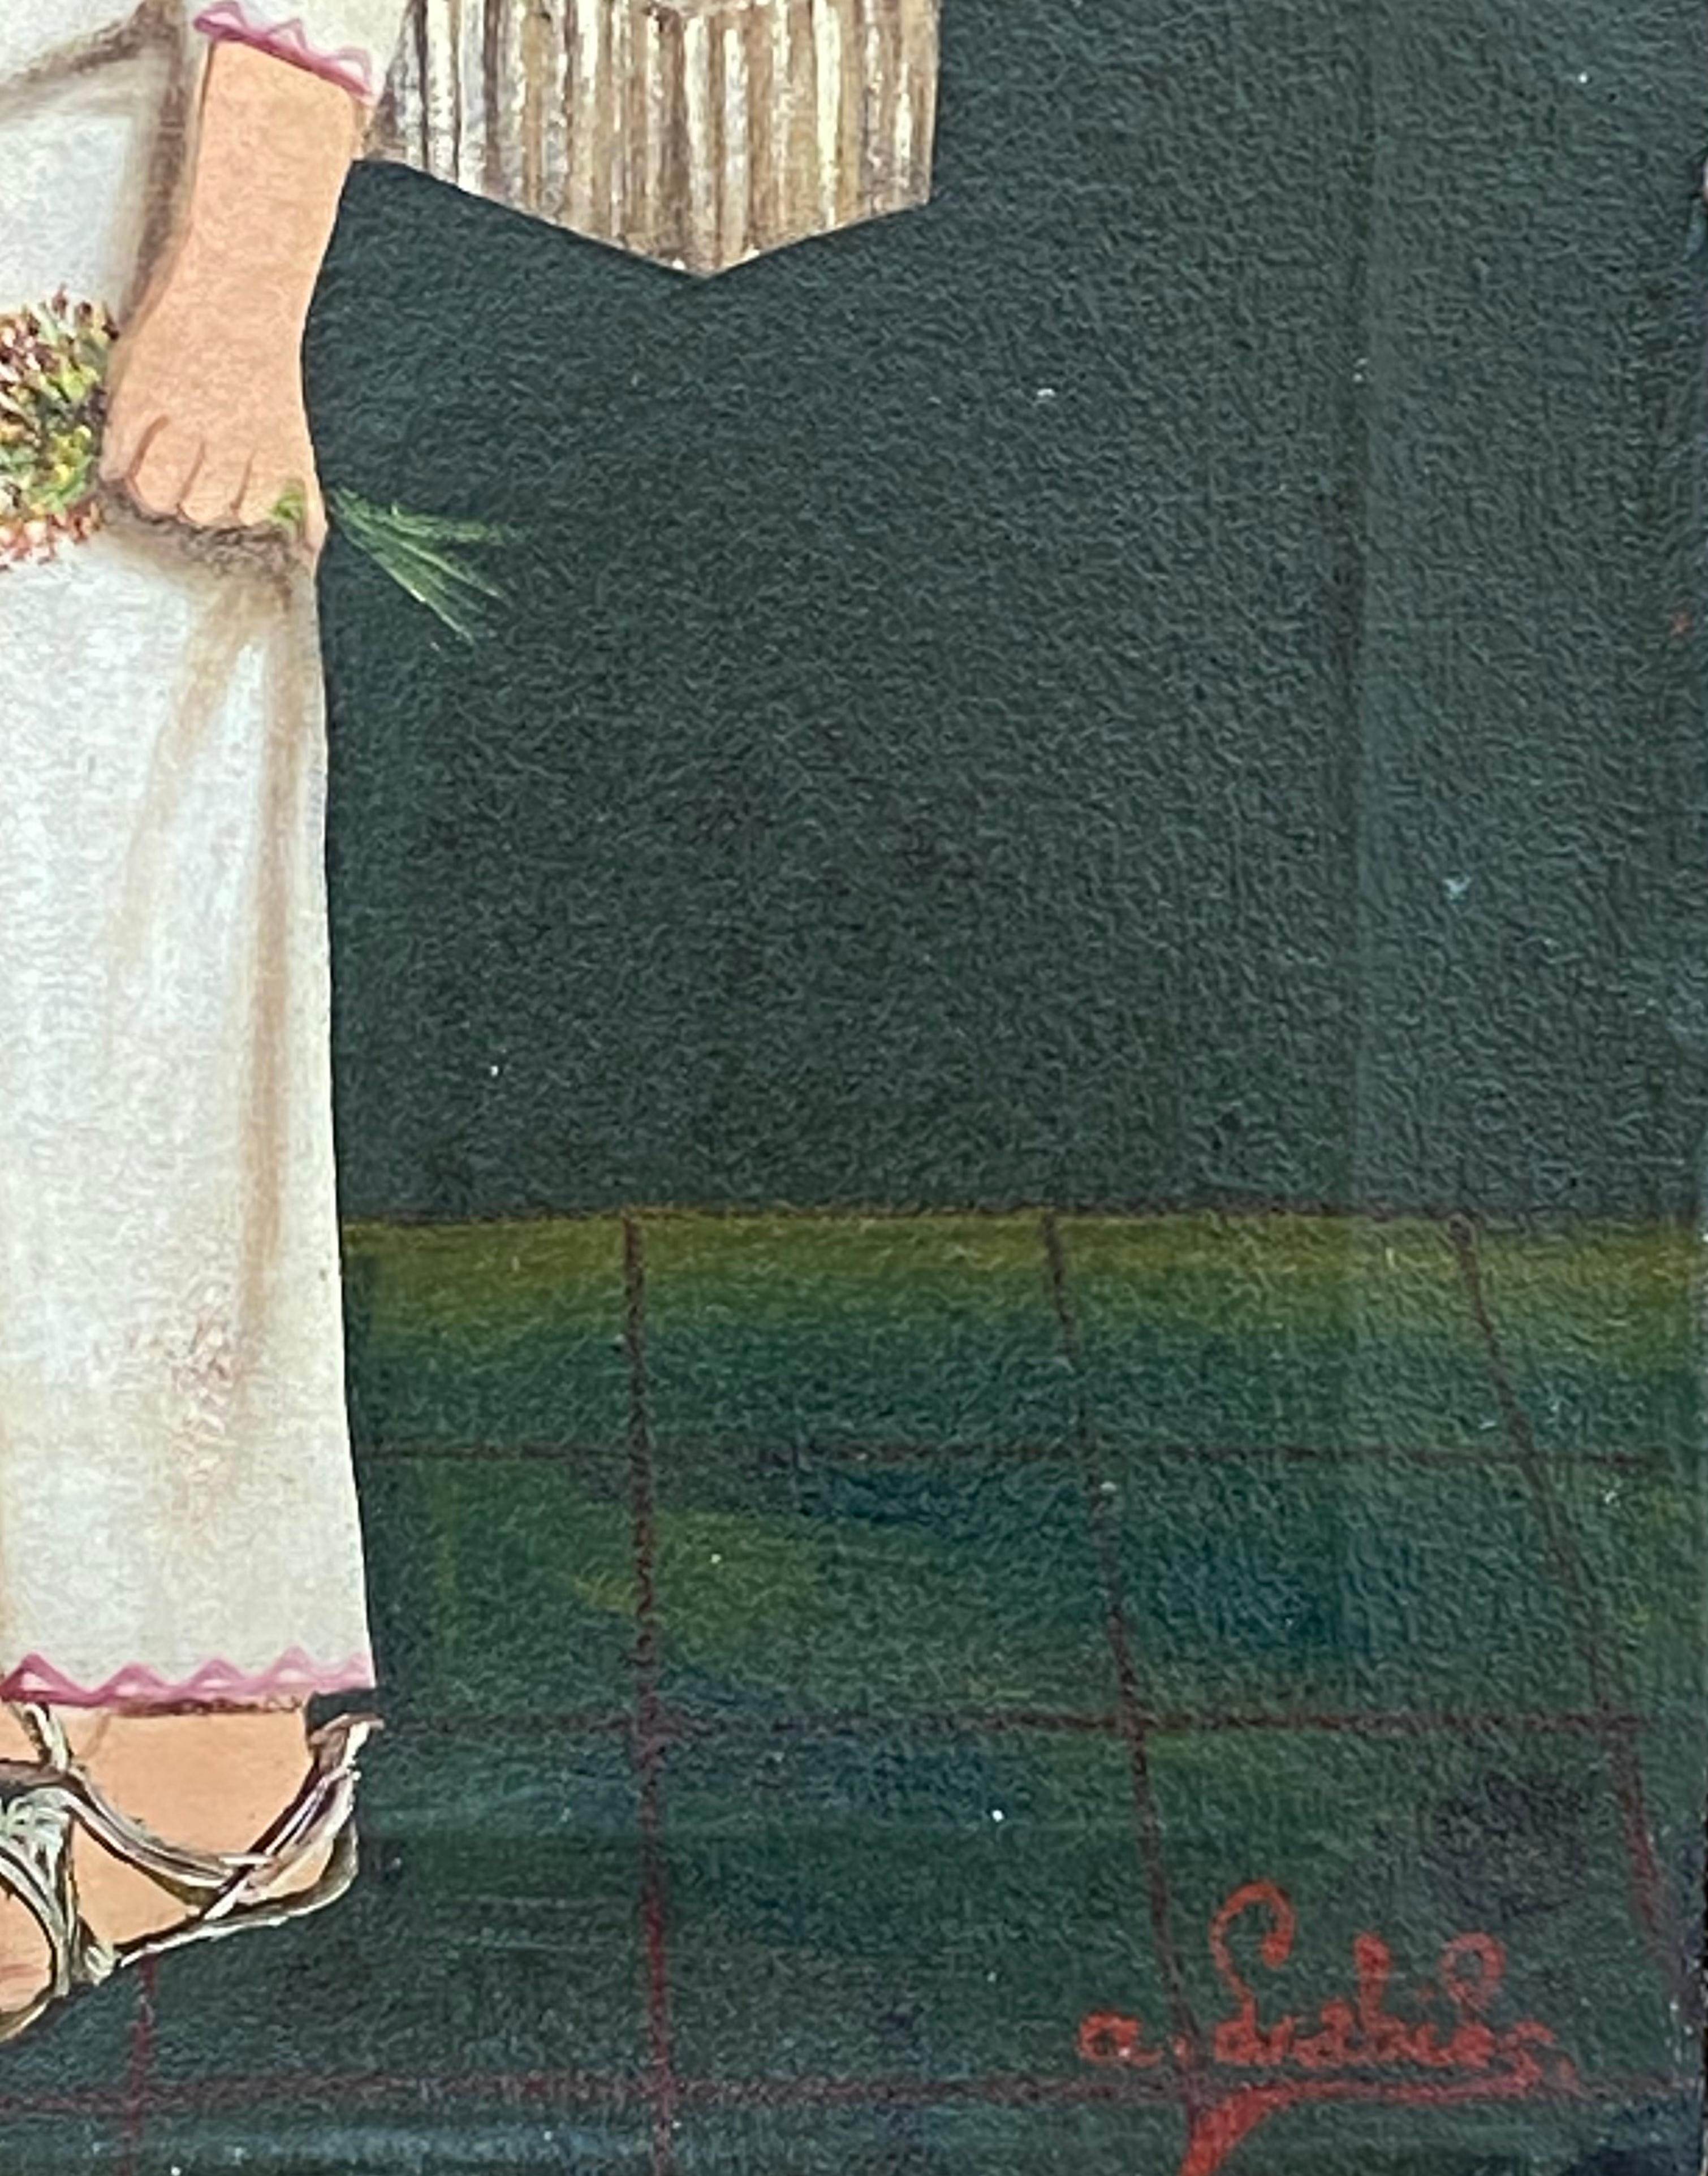 Original Öl auf Leinwand Volkskunst Gemälde von dem bekannten mexikanischen Künstler, Agapito Labios.  Signiert unten rechts. Circa 1935. Der Zustand ist sehr gut. Leichte Abnutzungserscheinungen auf dem Keilrahmen und leichte Knicke in der Leinwand